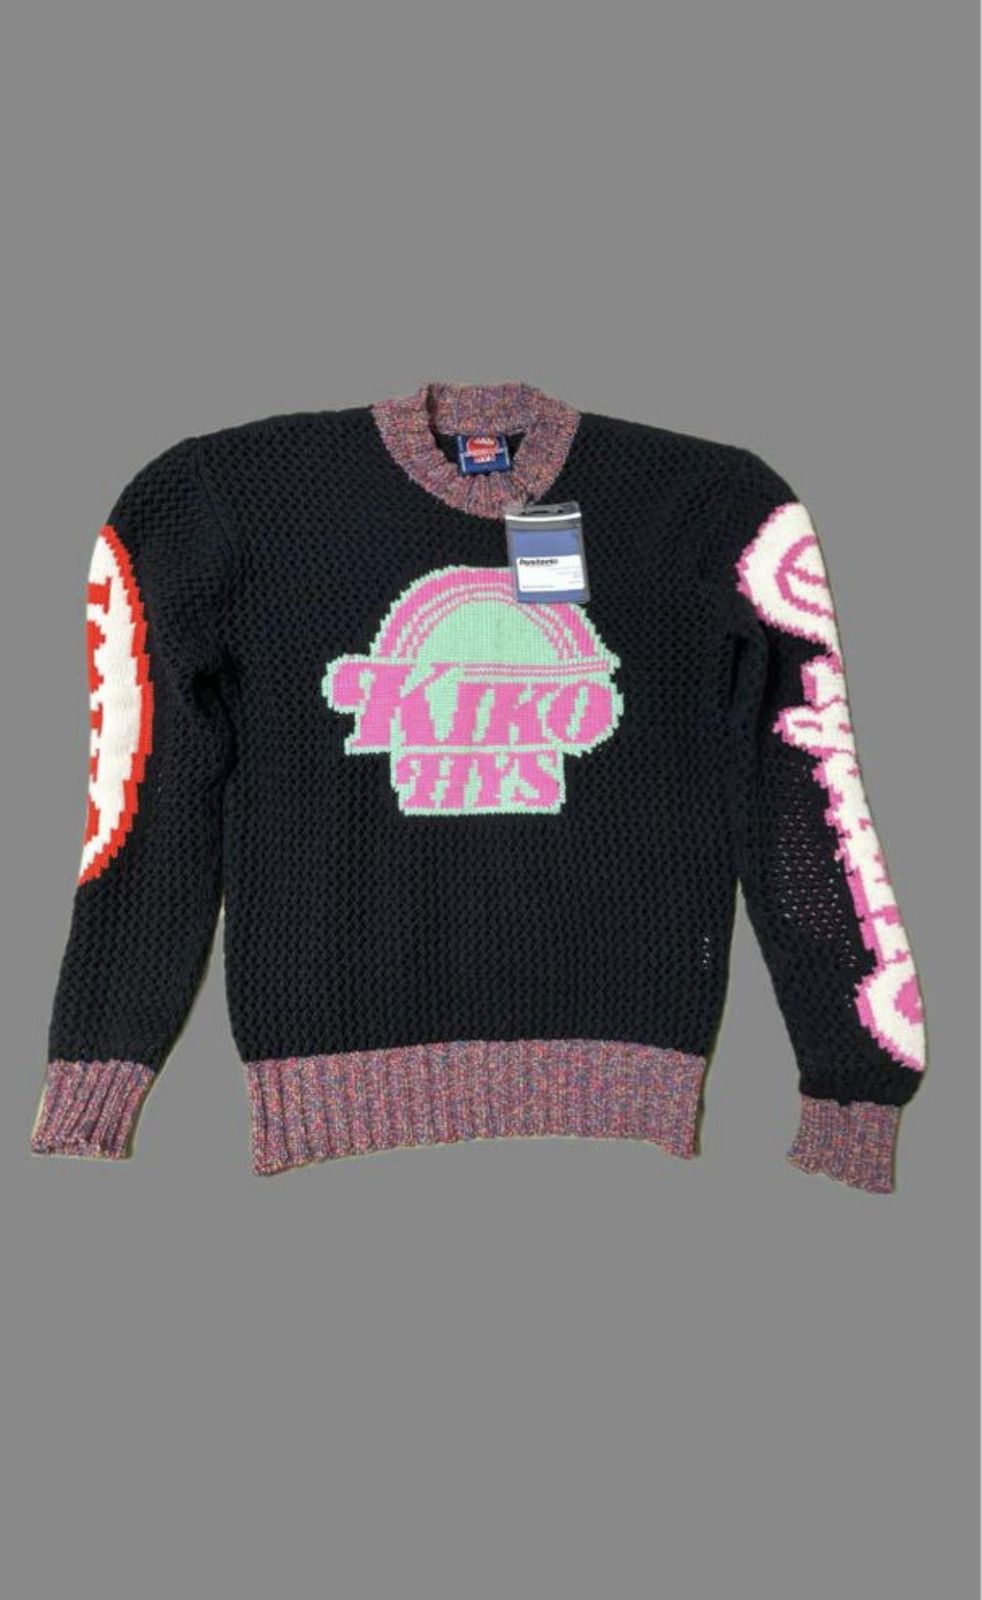 Kiko Kostadinov Kiko Kostadinov Futur Printed Knit Sweater in Ecru 